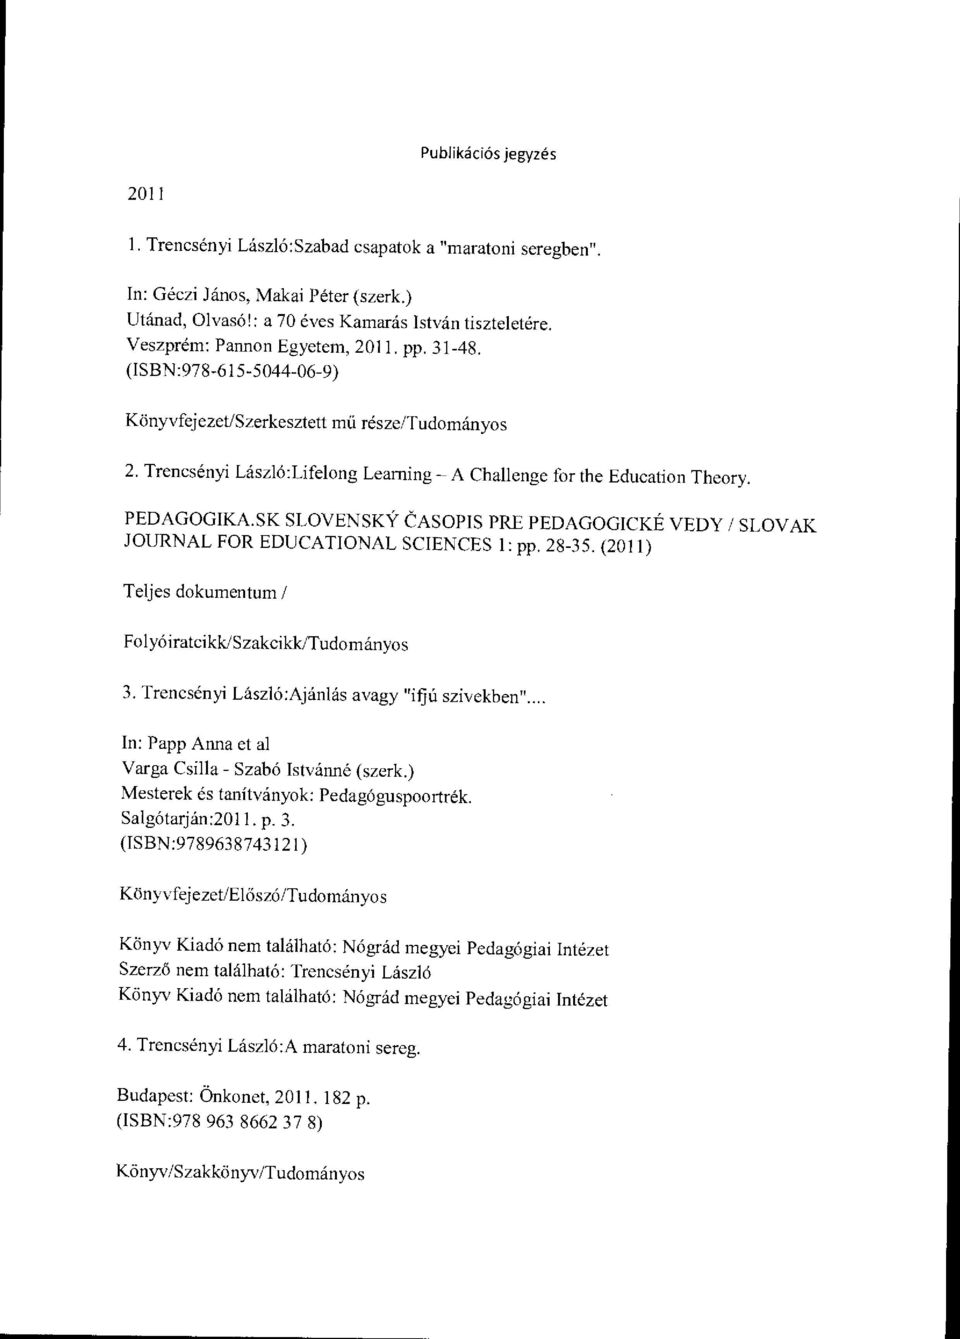 PEDAGOGIKA.SK SLOVENSKY CASOPIS PRE PEDAGOGICKÉ VEDY / SLOVAK JOURNAL FOR EDUCATIONAL SCIENCES 1: pp. 28-35. (2011) Teljes dokumentum / 3. Trencsényi László:Ajánlás avagy "ifjú szivekben".